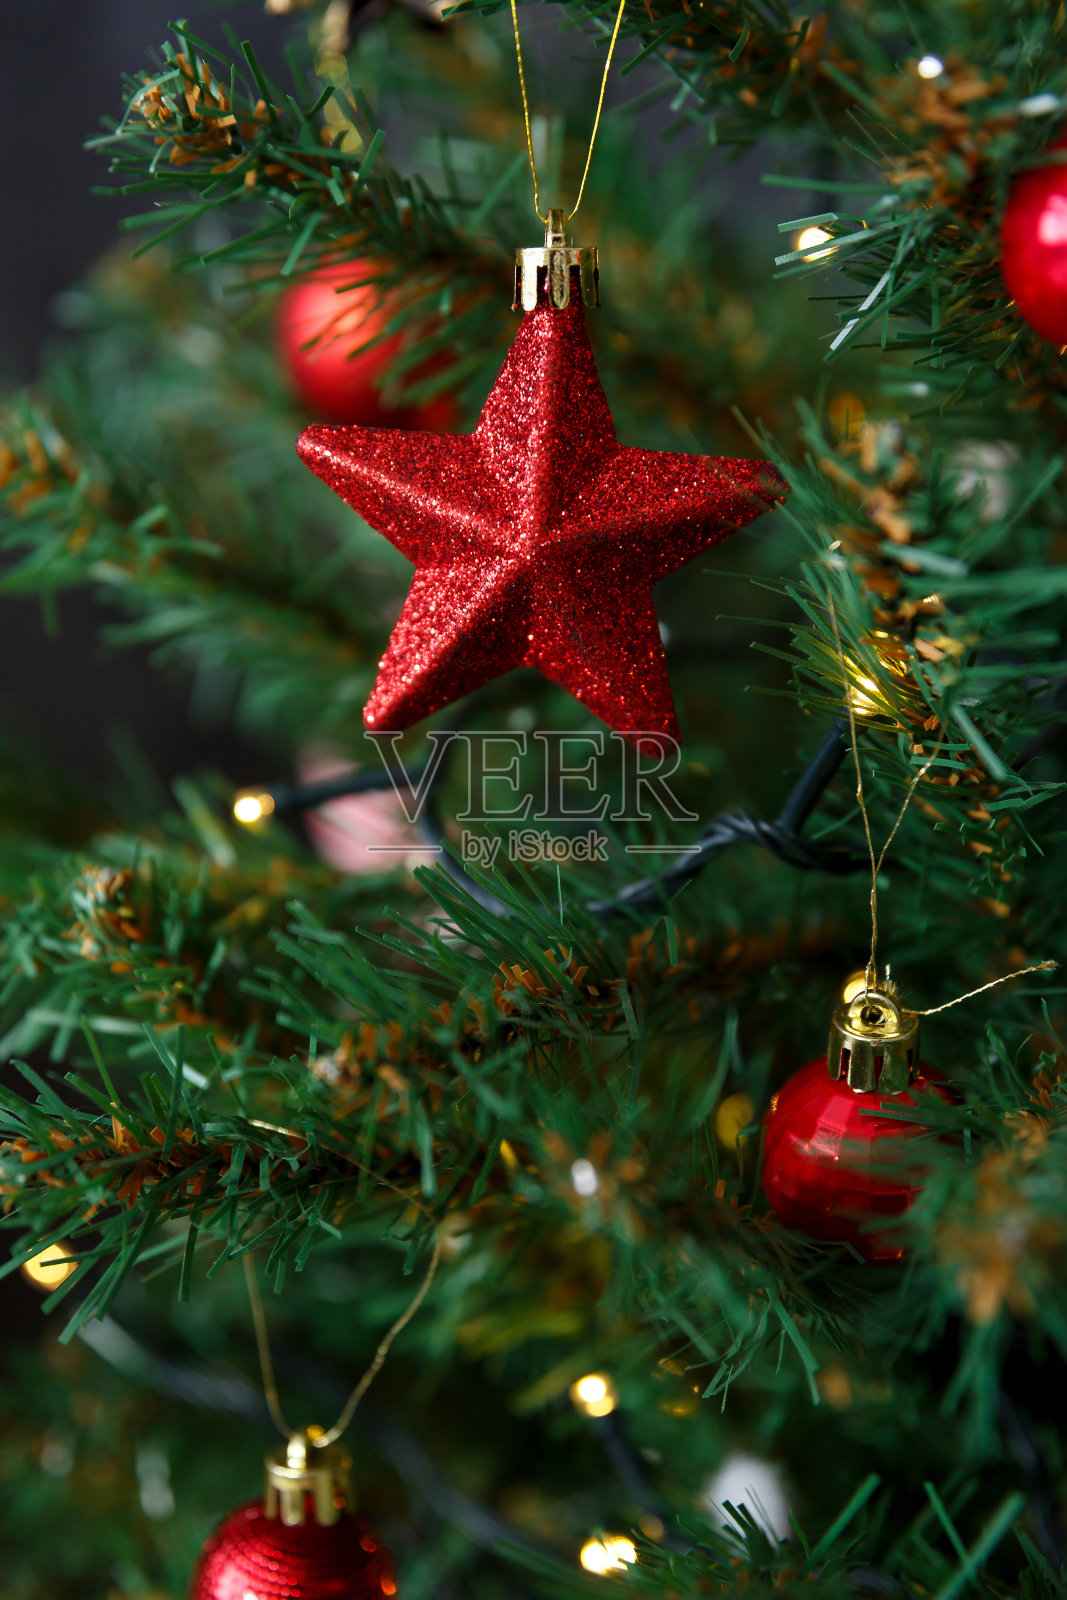 一个星星形状的圣诞玩具挂在树枝上照片摄影图片